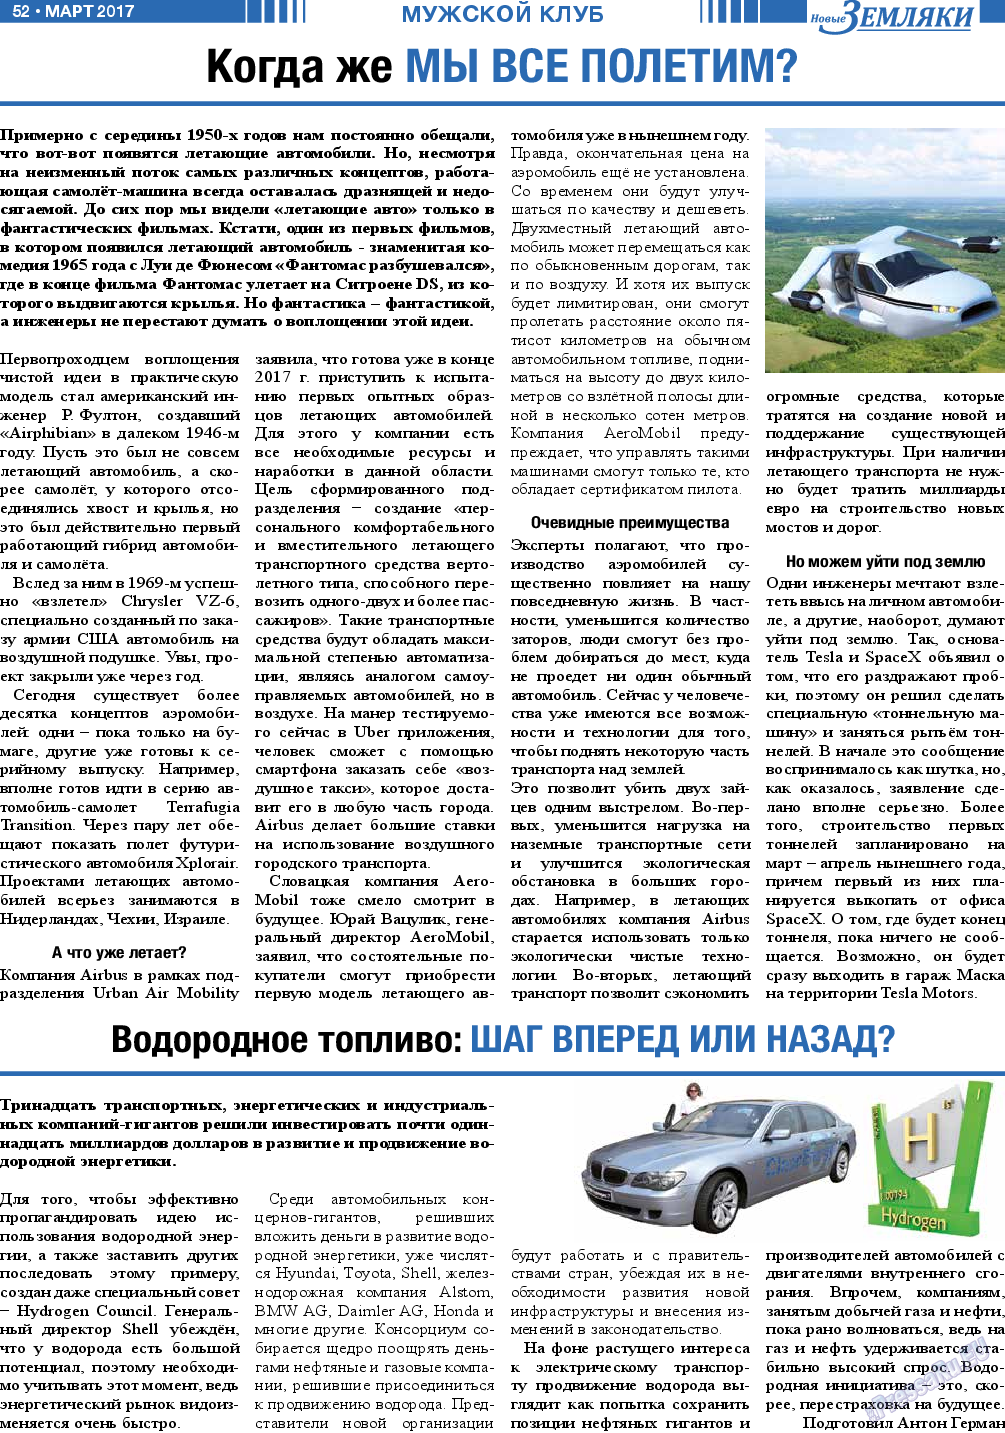 Новые Земляки, газета. 2017 №3 стр.52